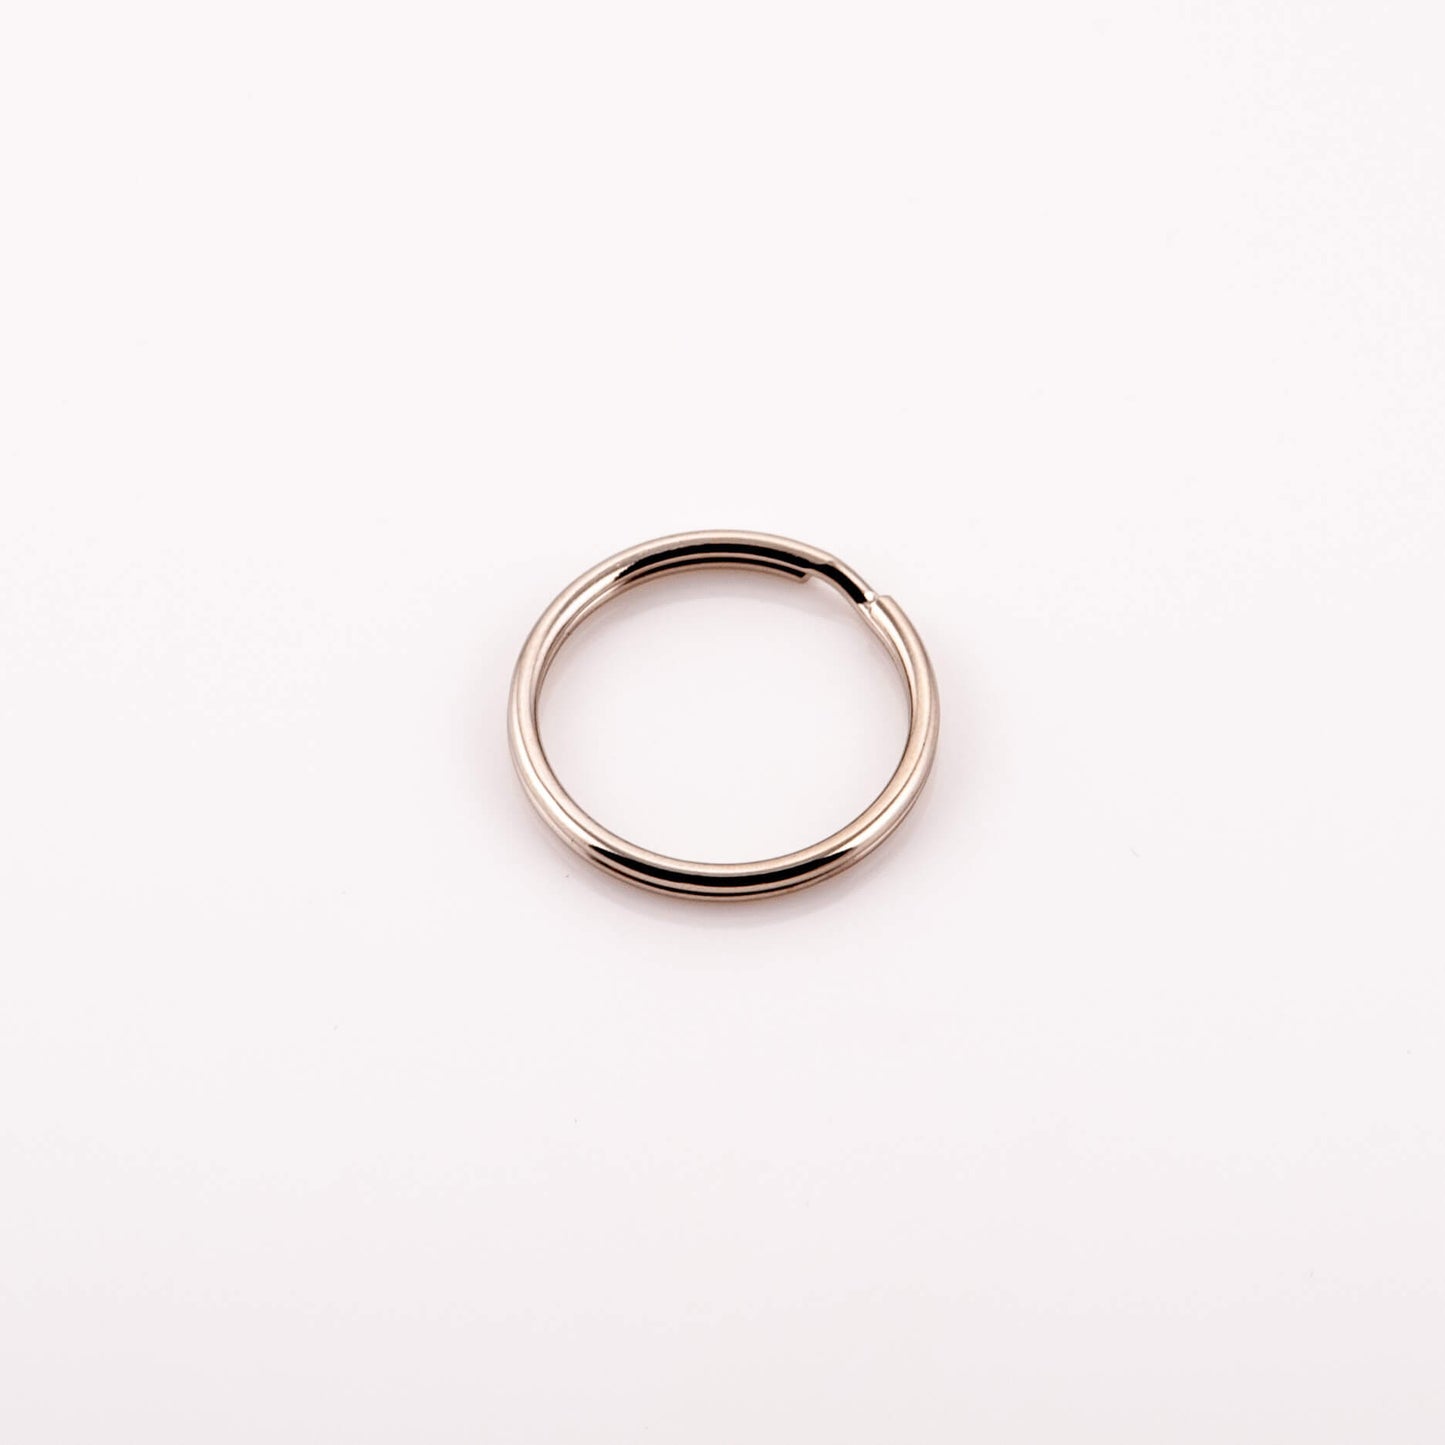 Split Rings - Key Ring Nickle